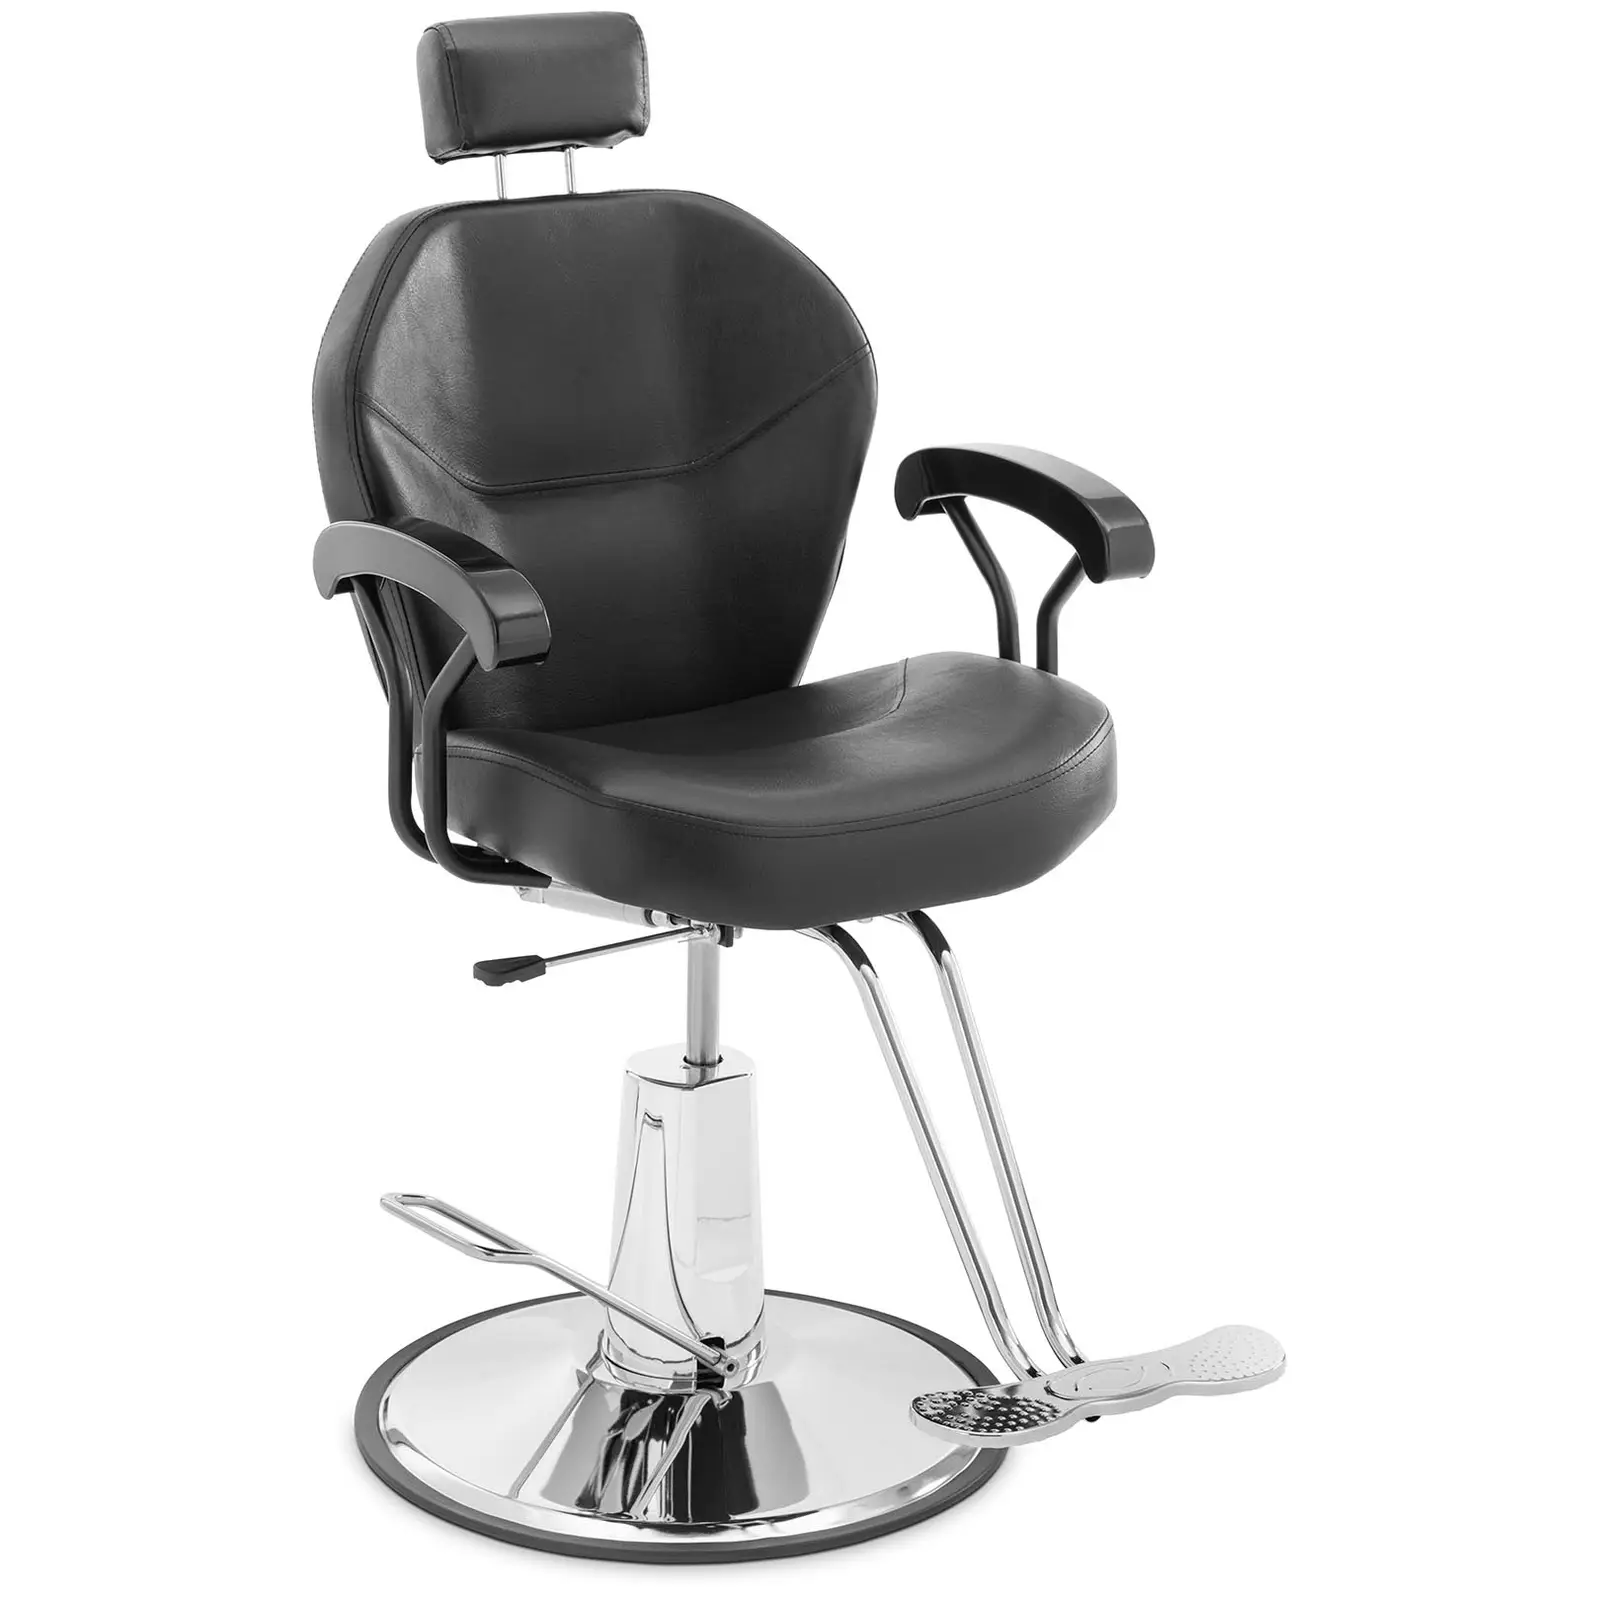 Grožio salono kėdė - galvos ir T formos kojų atramos - 52 - 64 cm - 150 kg - pakreipiama - juoda